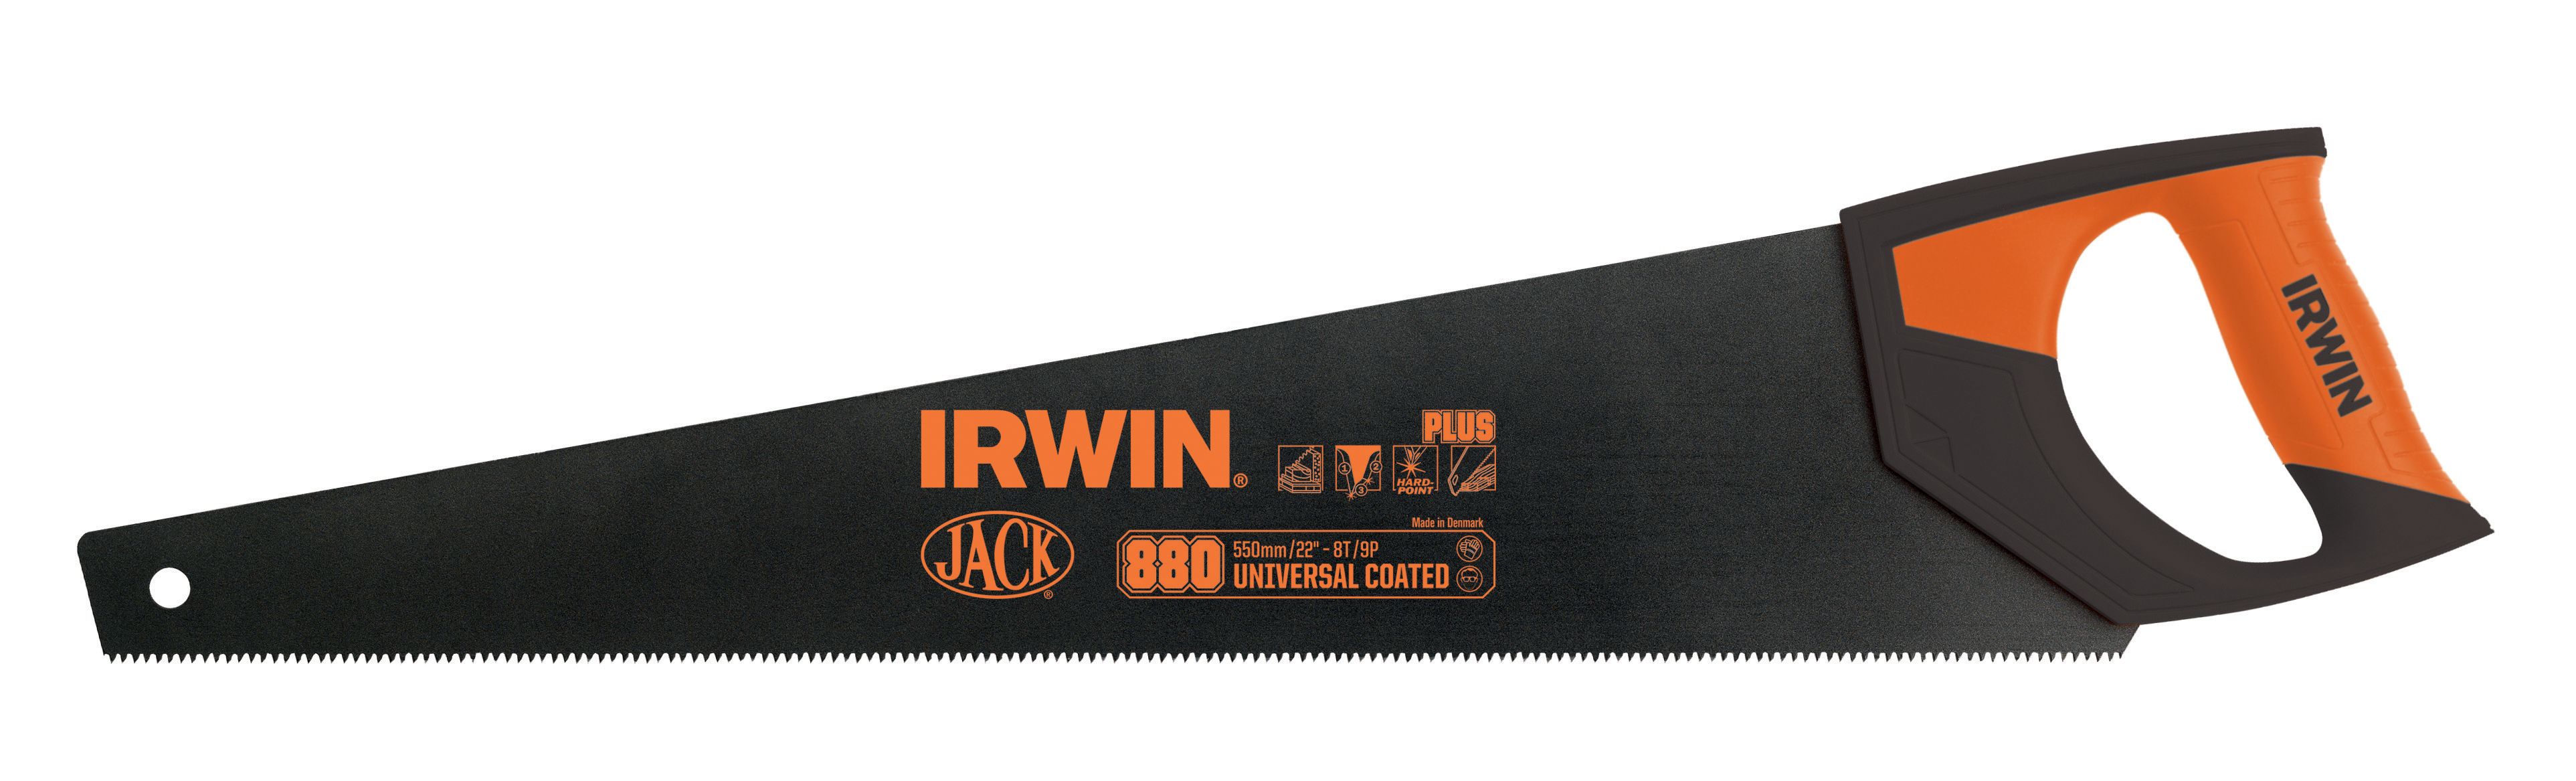 Image of Irwin 1897525 Jack 880 Coated Handsaw - 20in